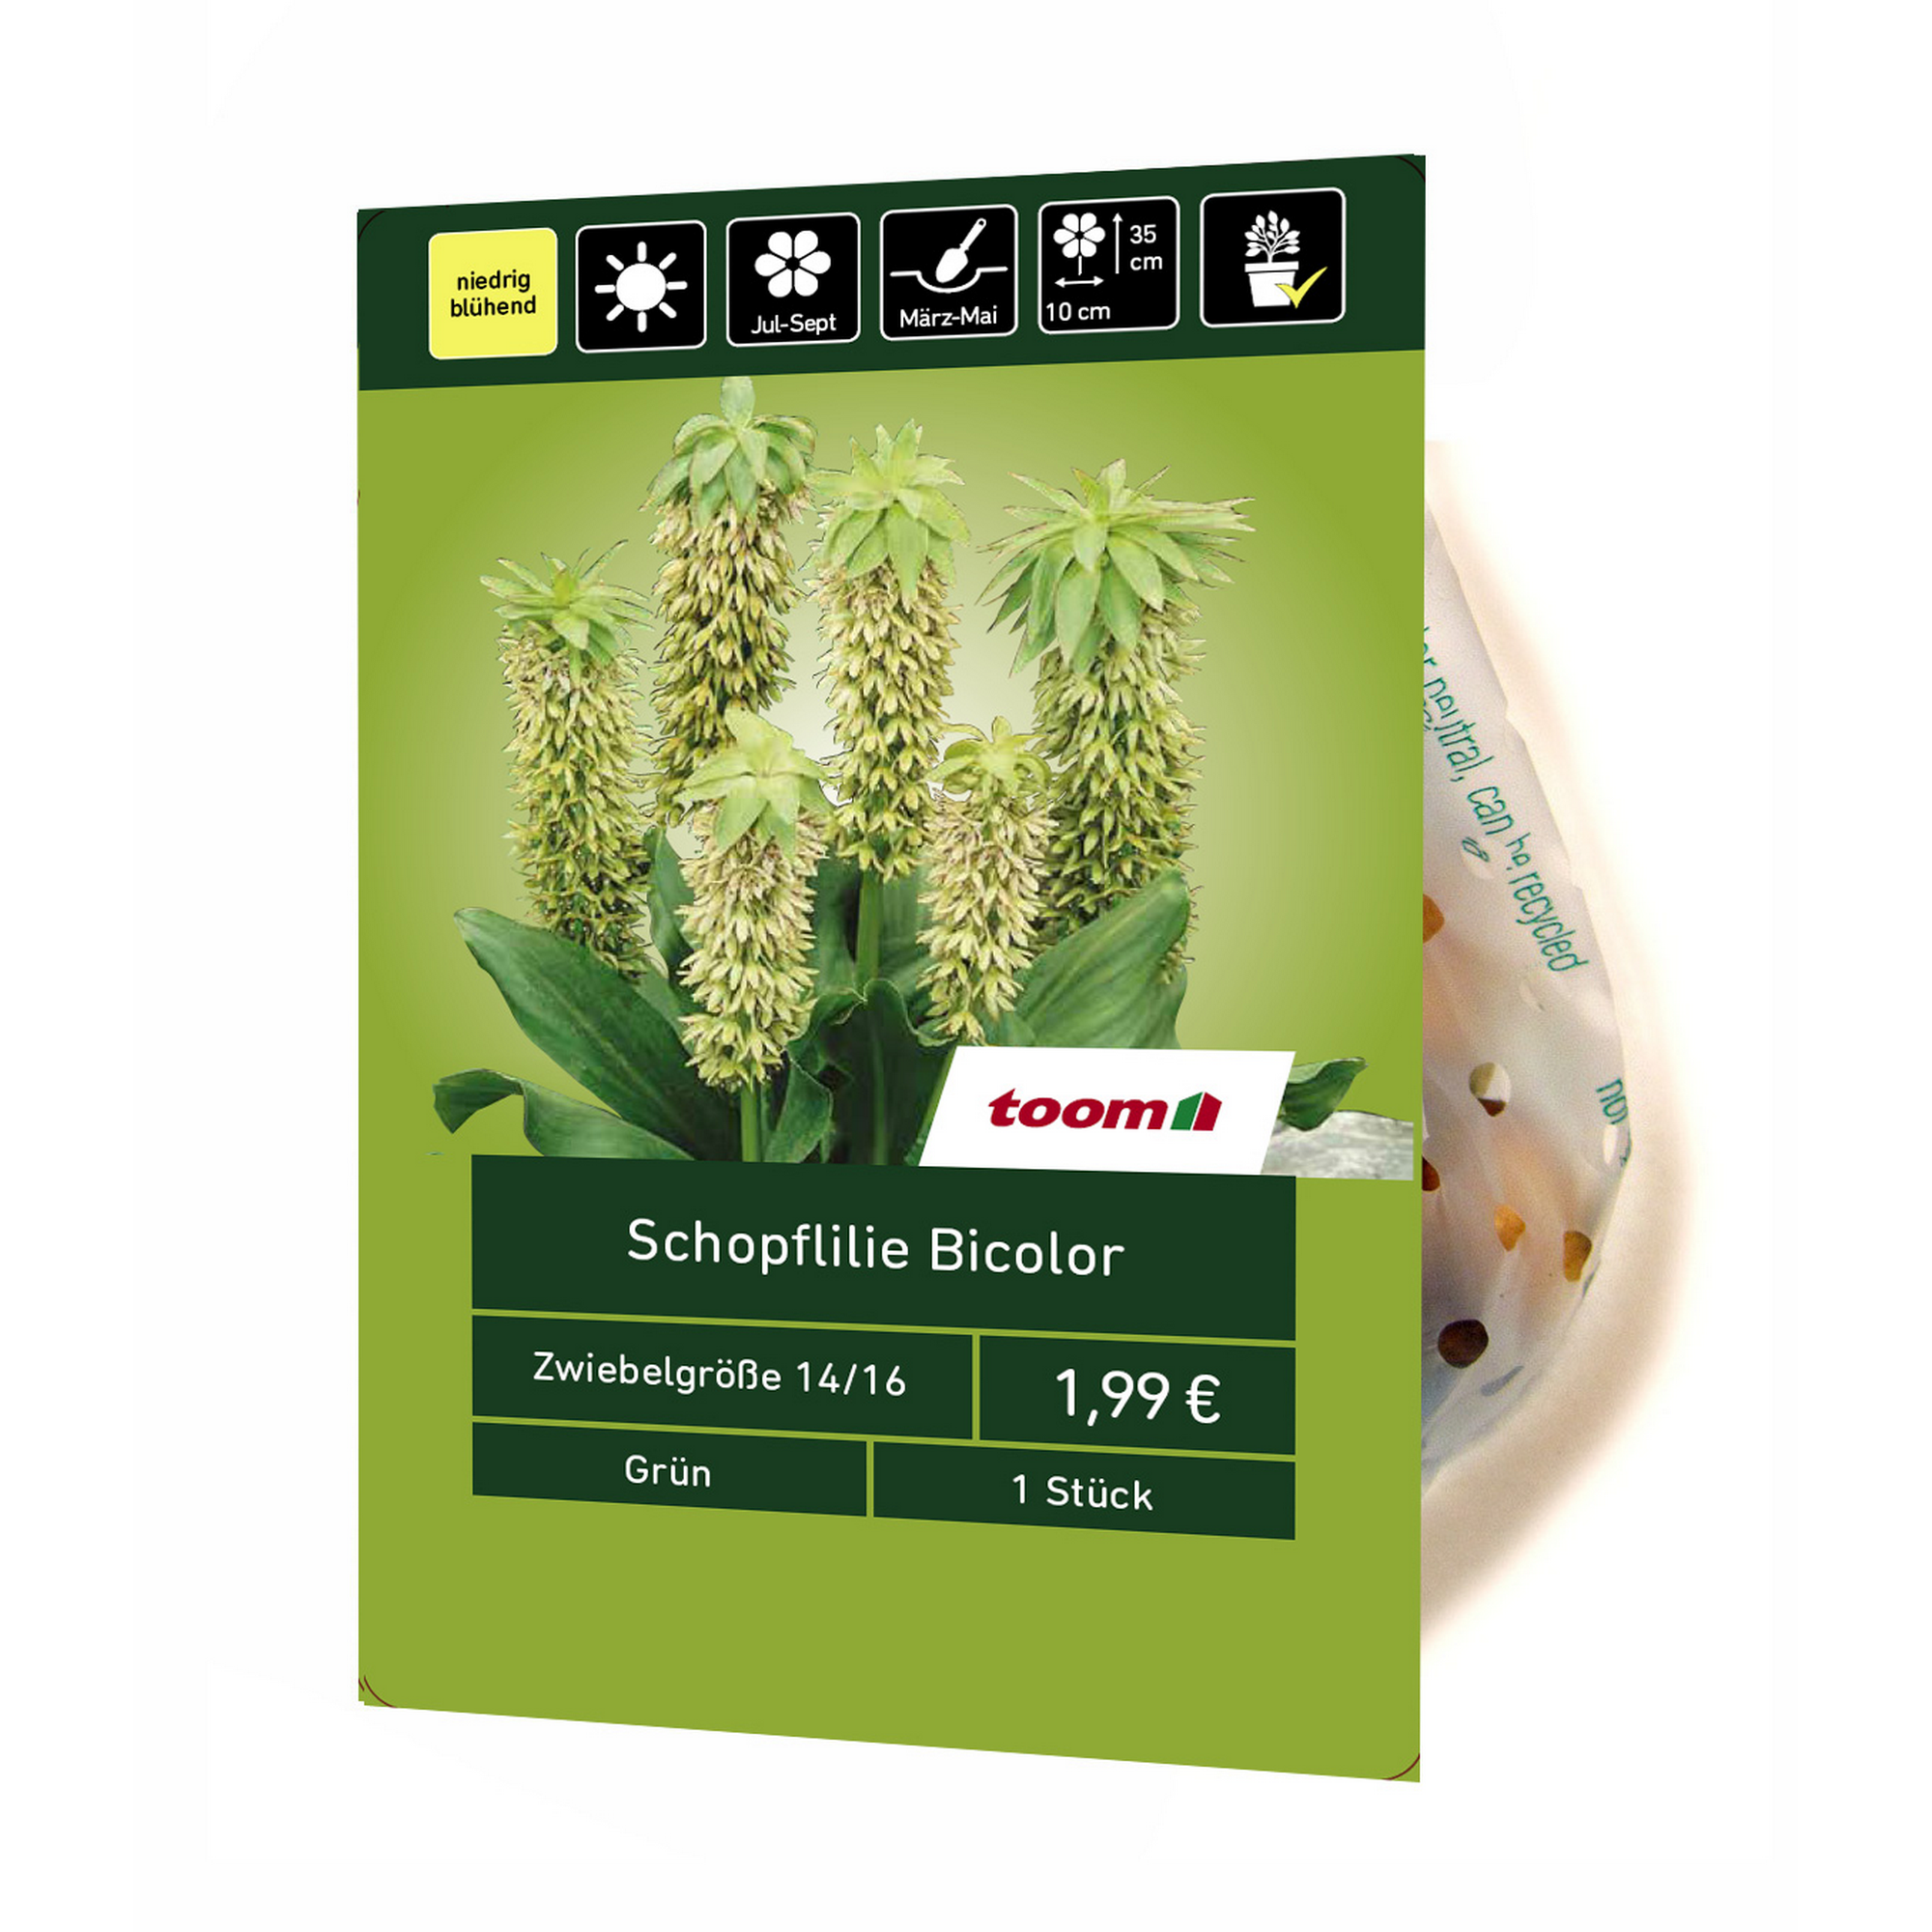 Schopflilie Bicolor grün 1 Stück + product picture